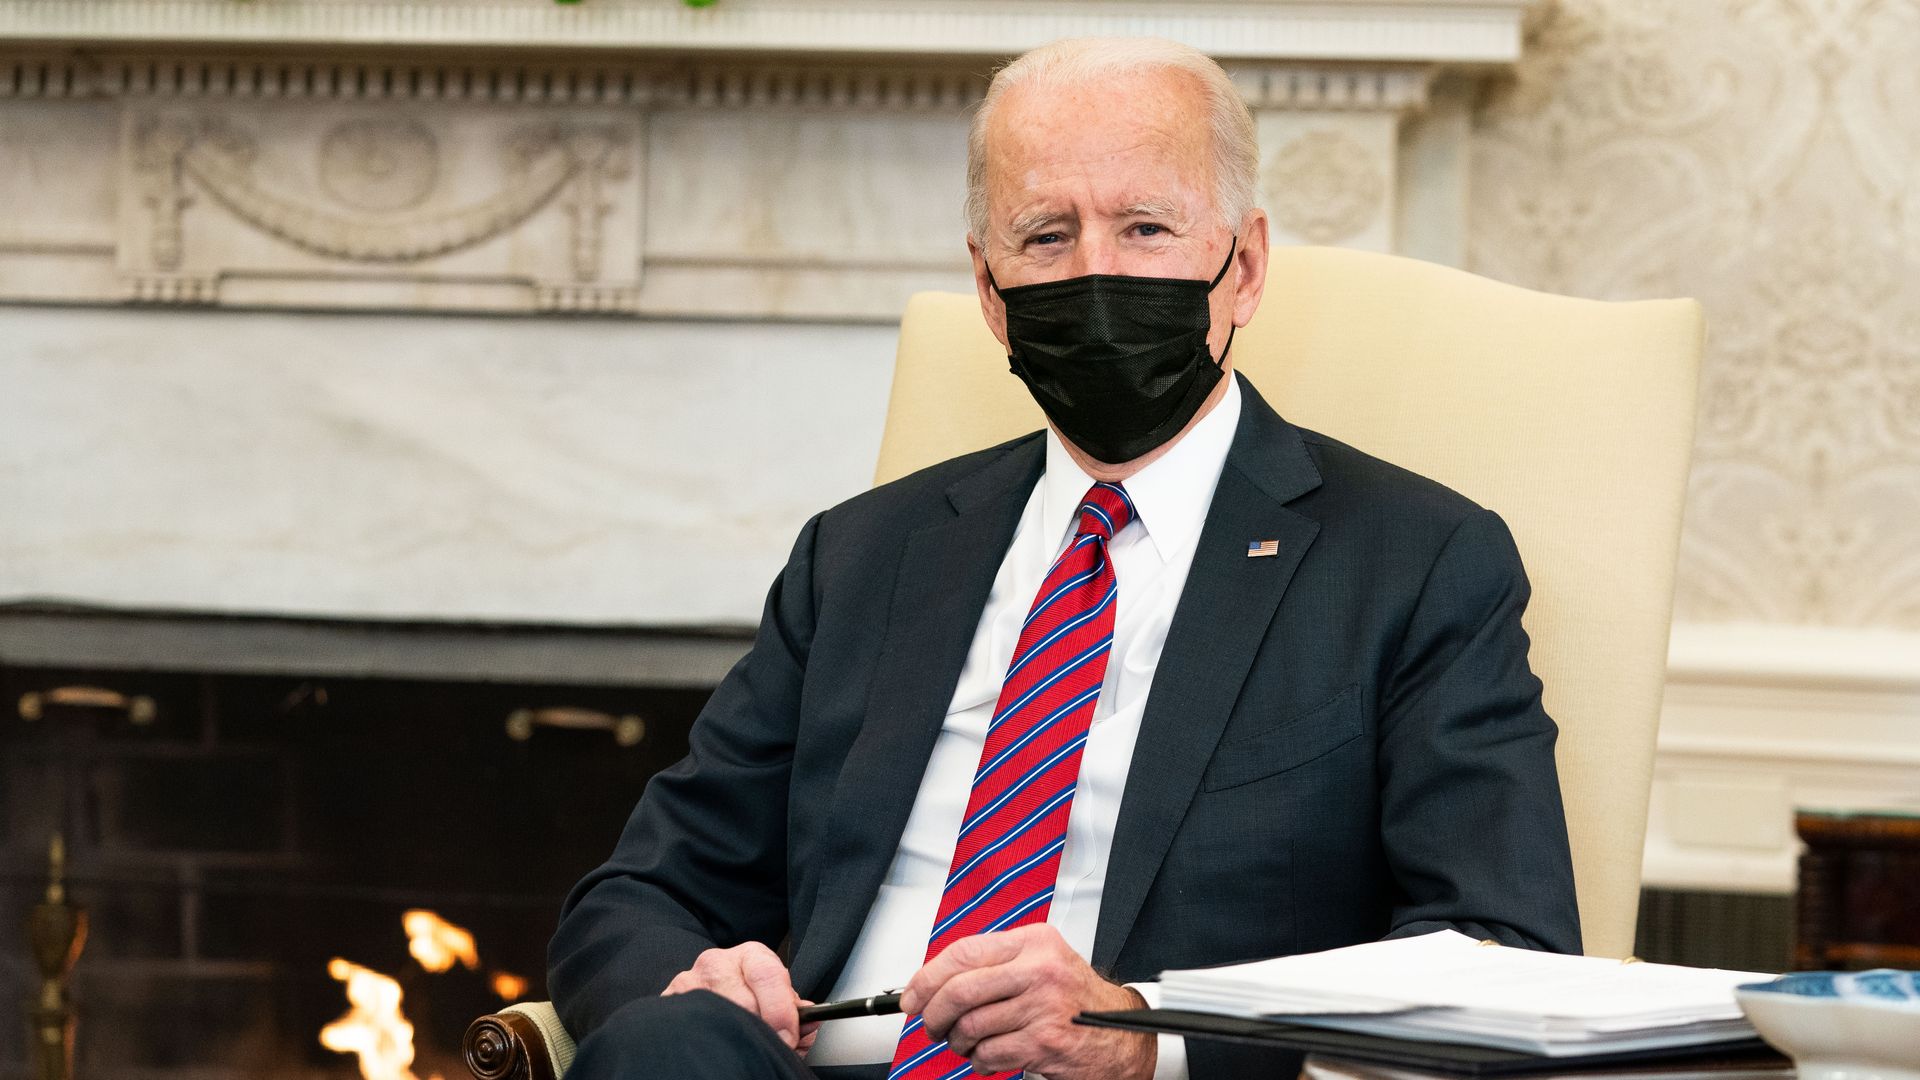 U.S. President Joe Biden meets with Treasury Secretary Janet Yellen in the Oval Office